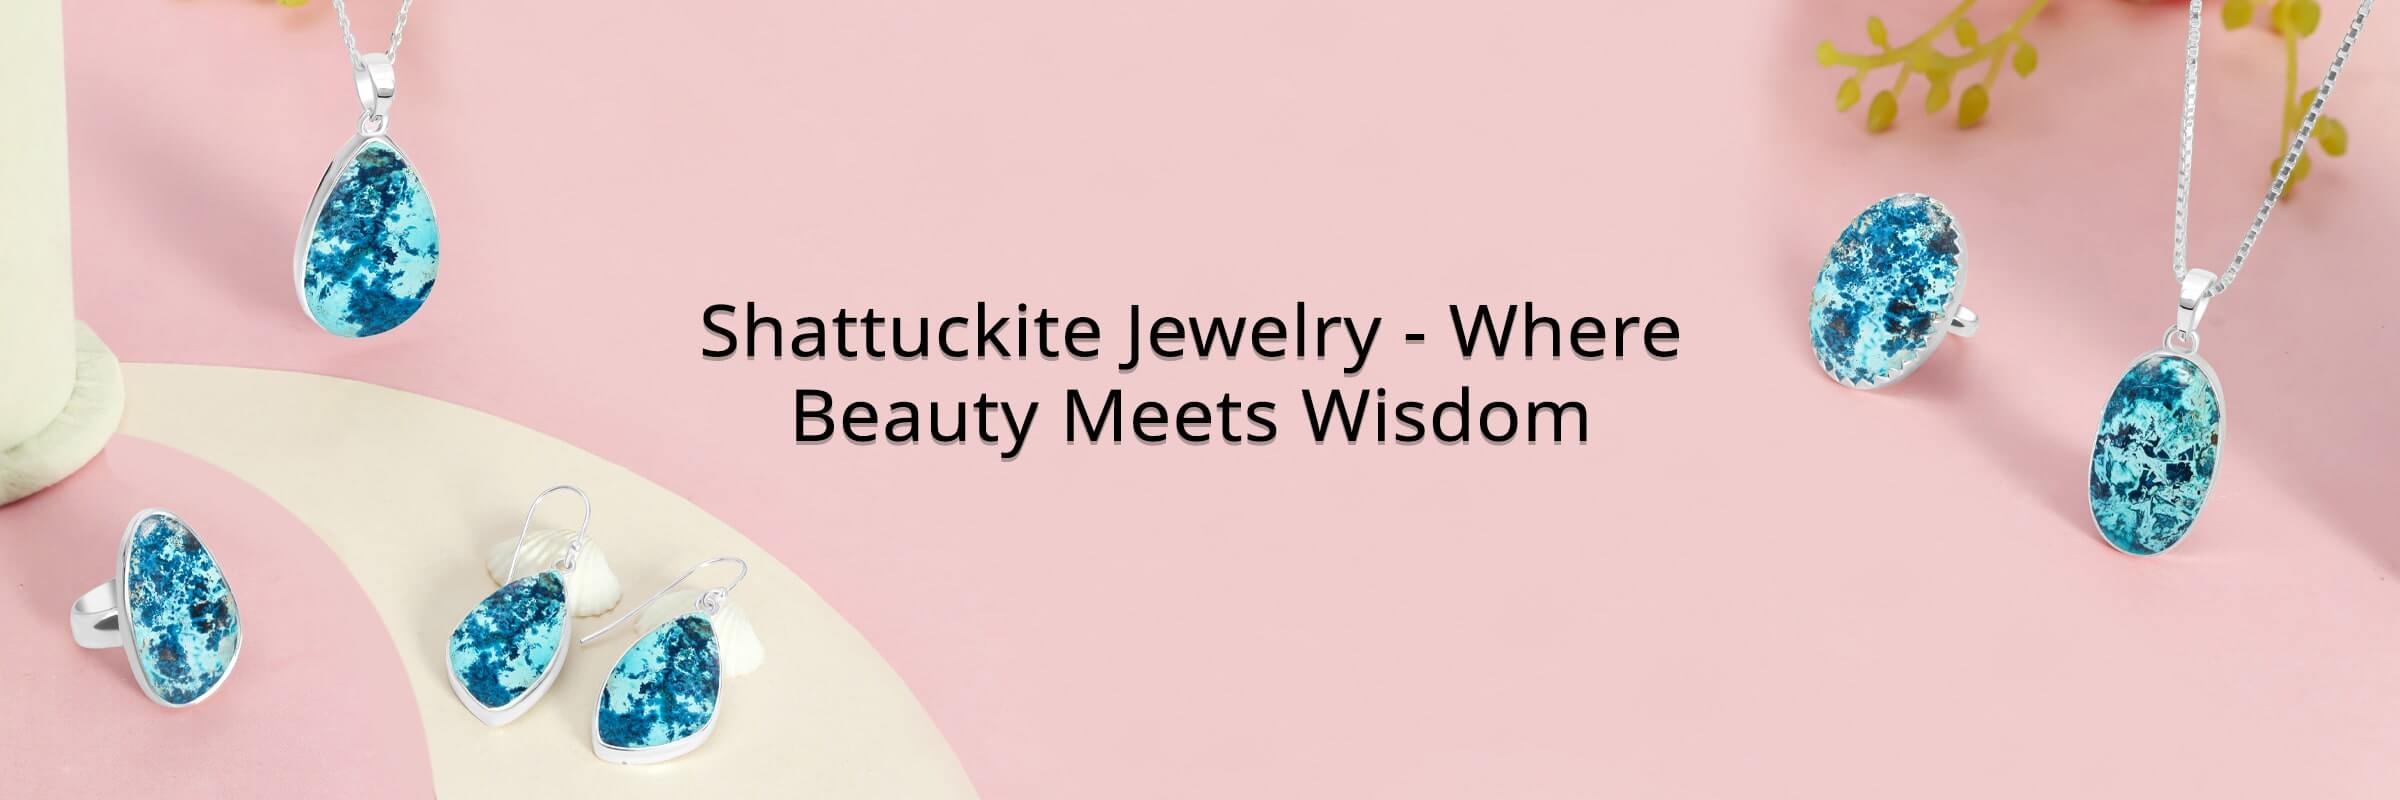 Shattuckite Jewelry